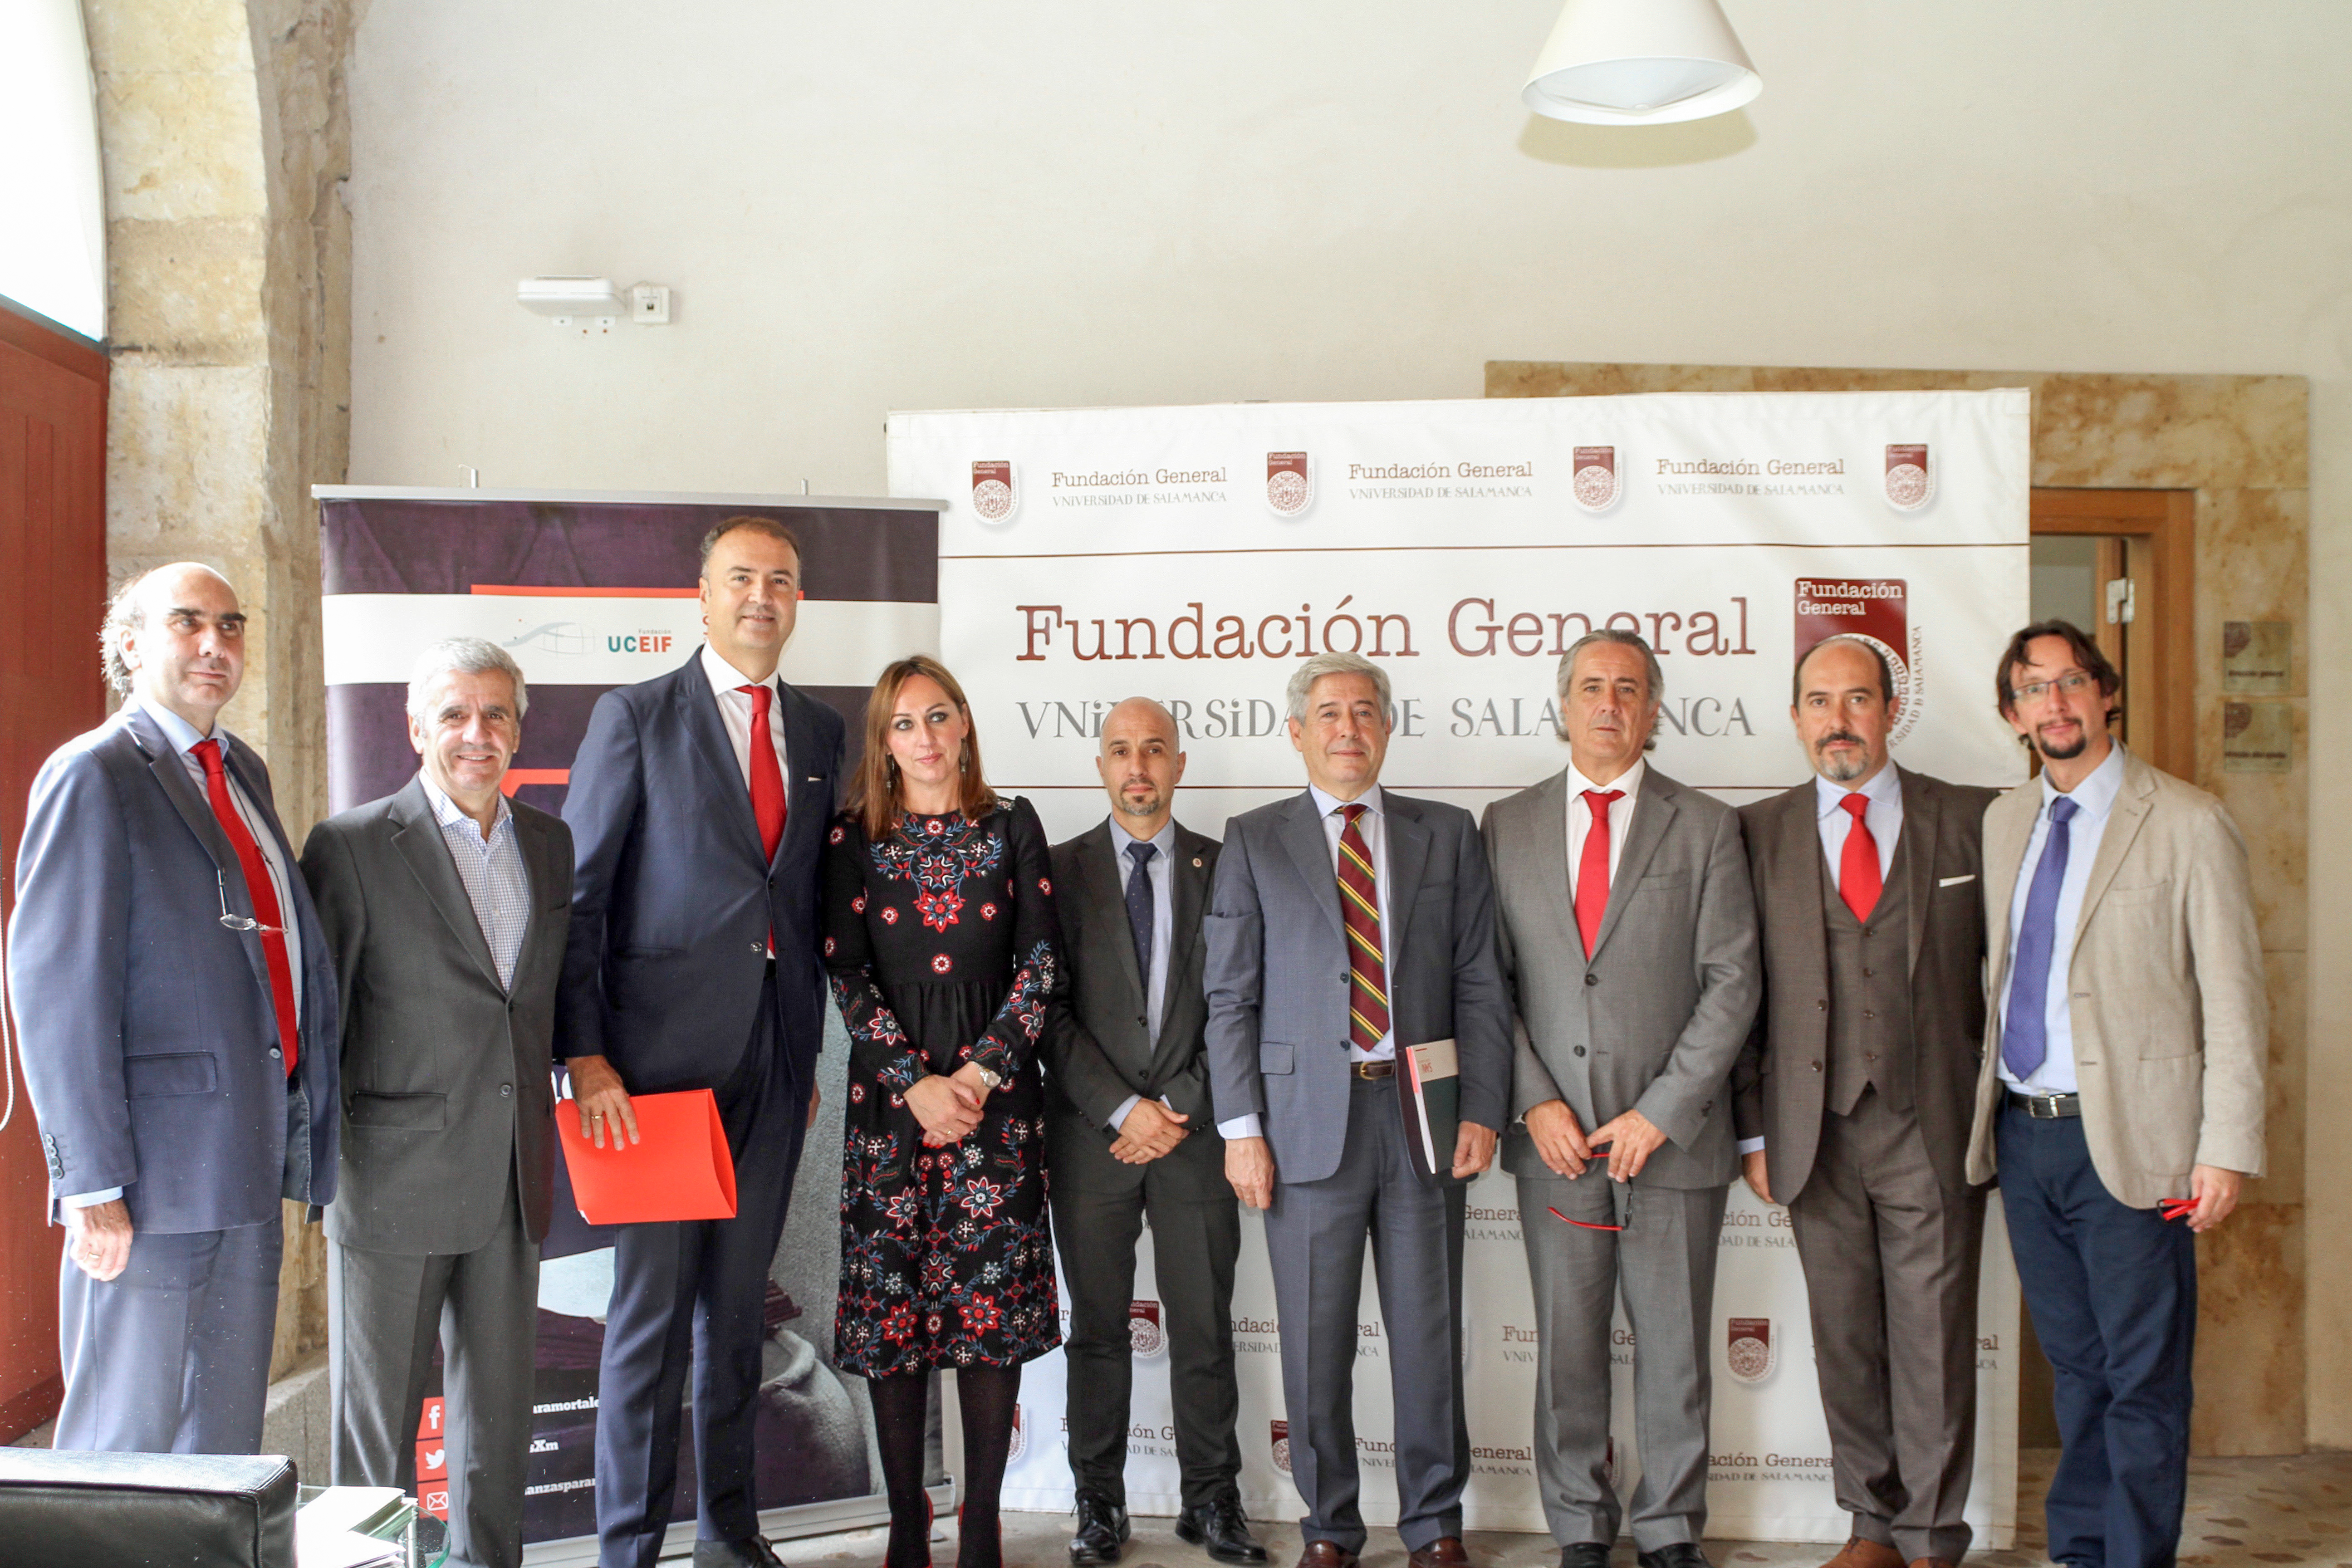 La Fundación General de la Universidad de Salamanca y la Fundación UCEIF suscriben un convenio de colaboración para promover la Educación financiera